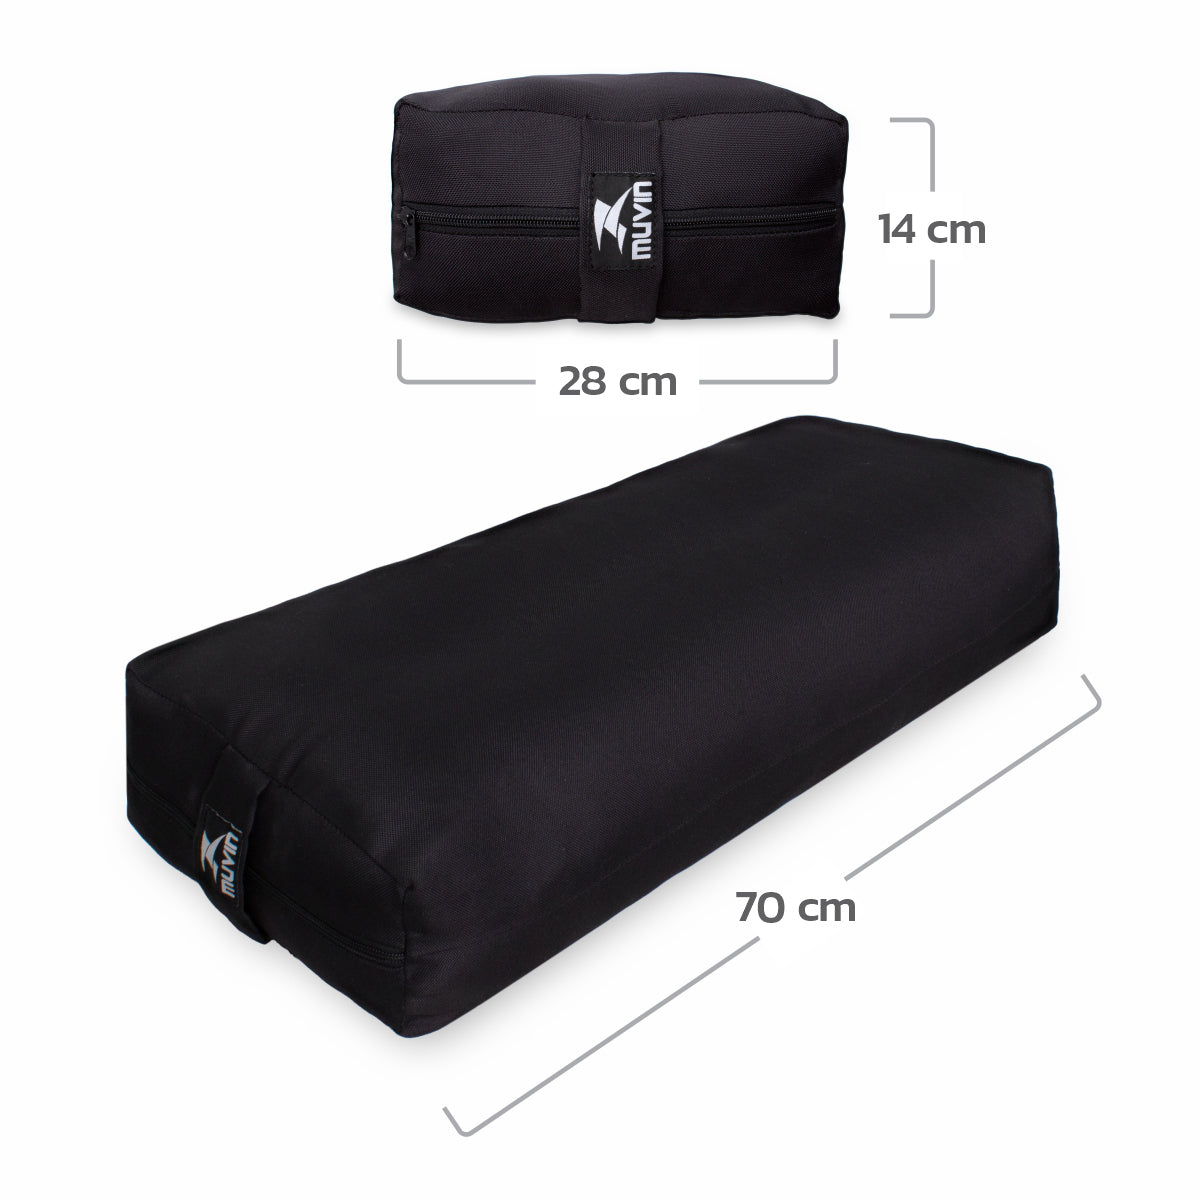 Kit Tapete para Yoga em PVC + Strap para Yoga - 245cm + Bolster Retangular  para Yoga - Muvin - KIT-005500